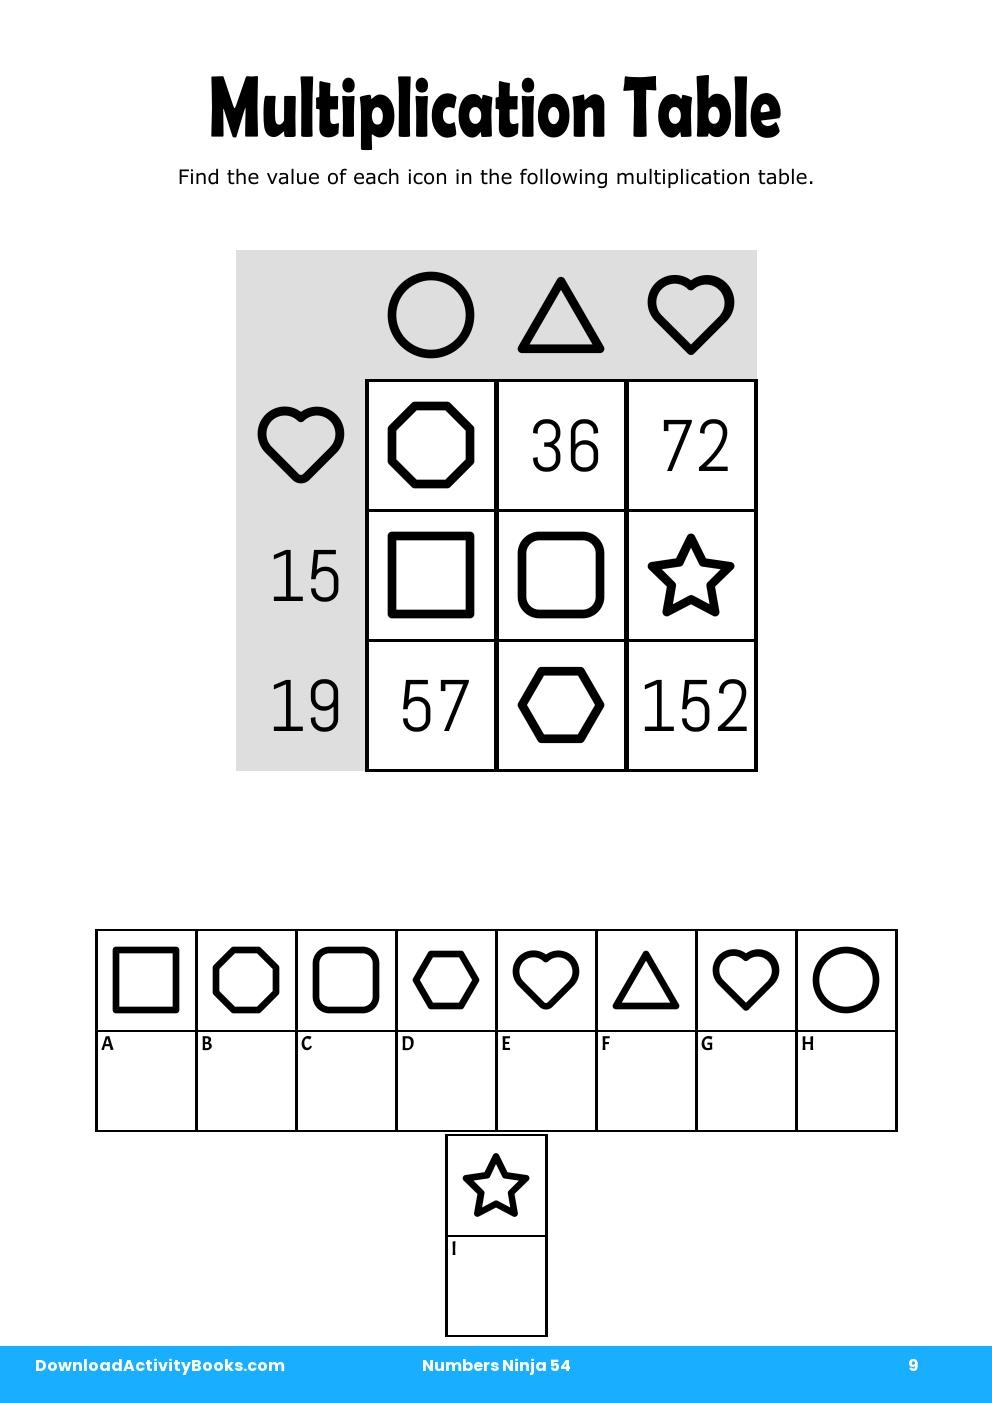 Multiplication Table in Numbers Ninja 54